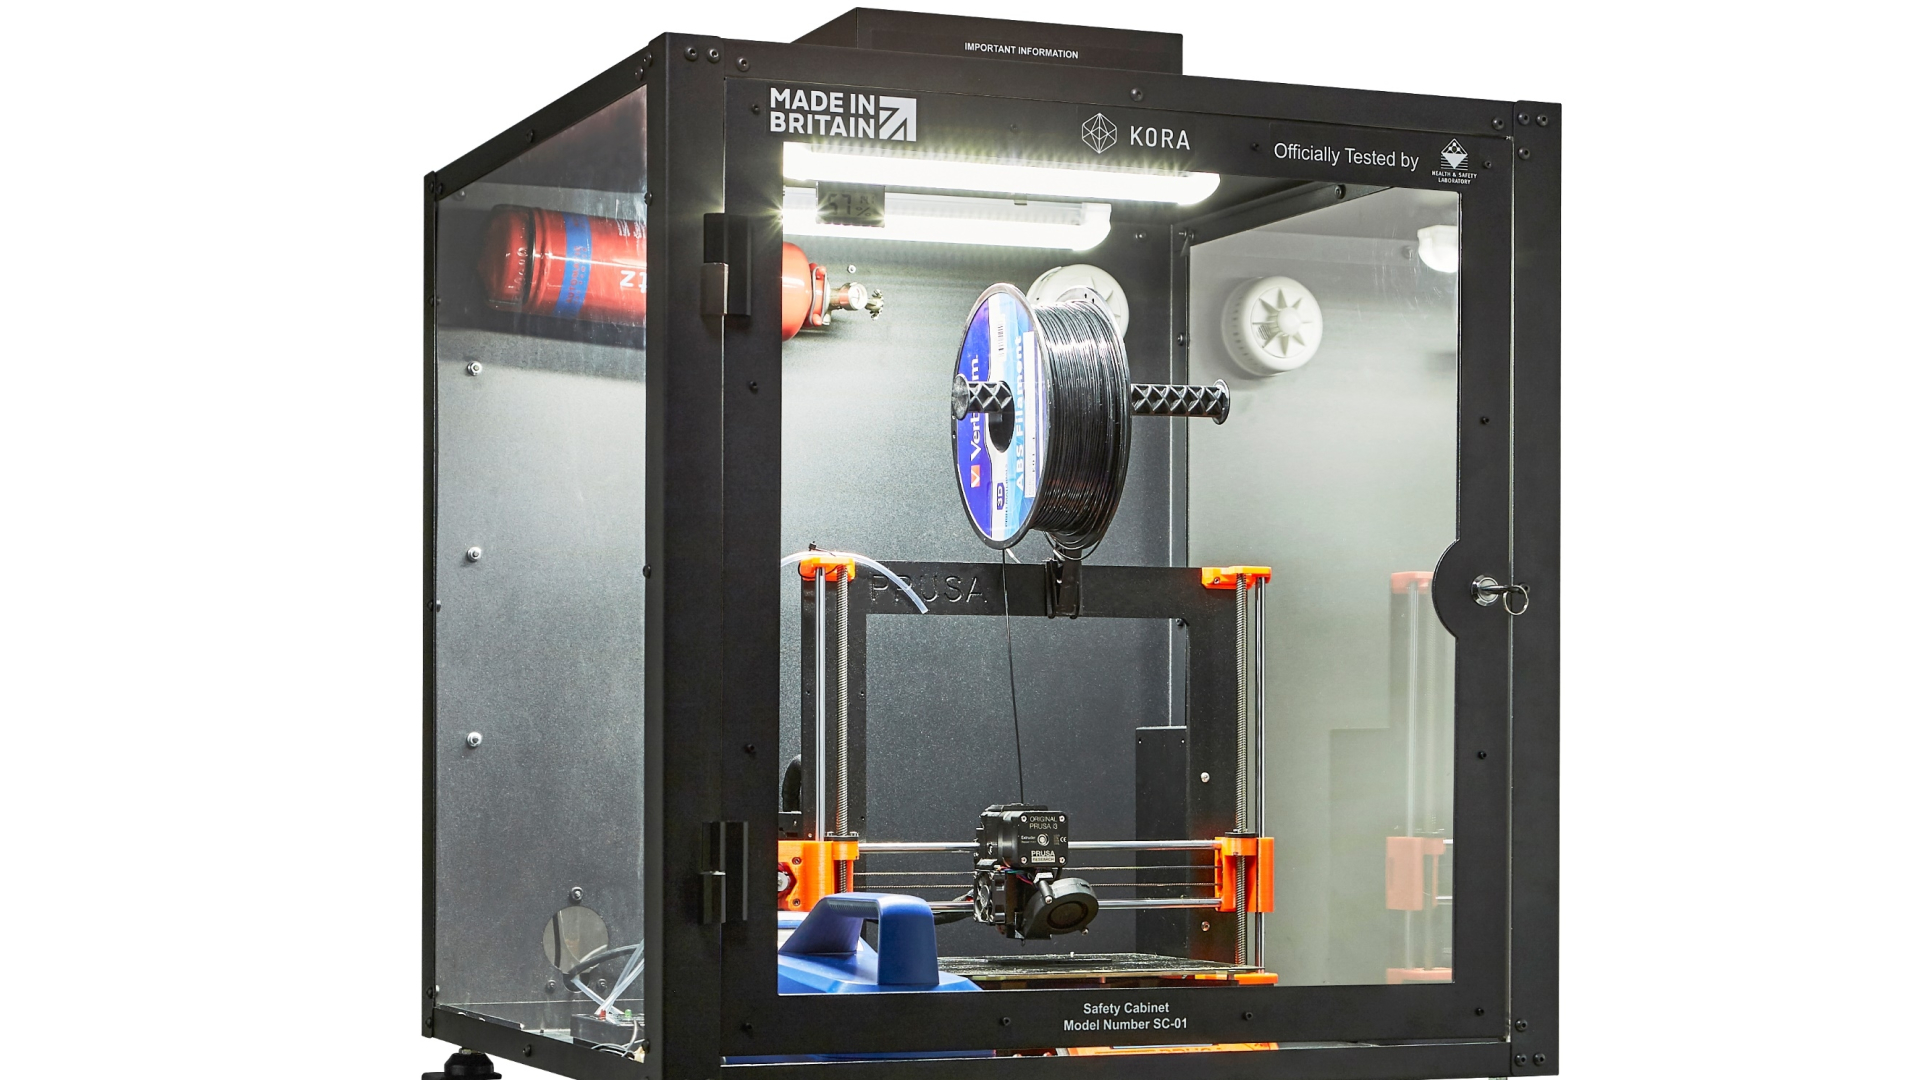 Balehval Mudret vigtig Kora: 3D Printers, Safety Cabinets, Filament & Accessories